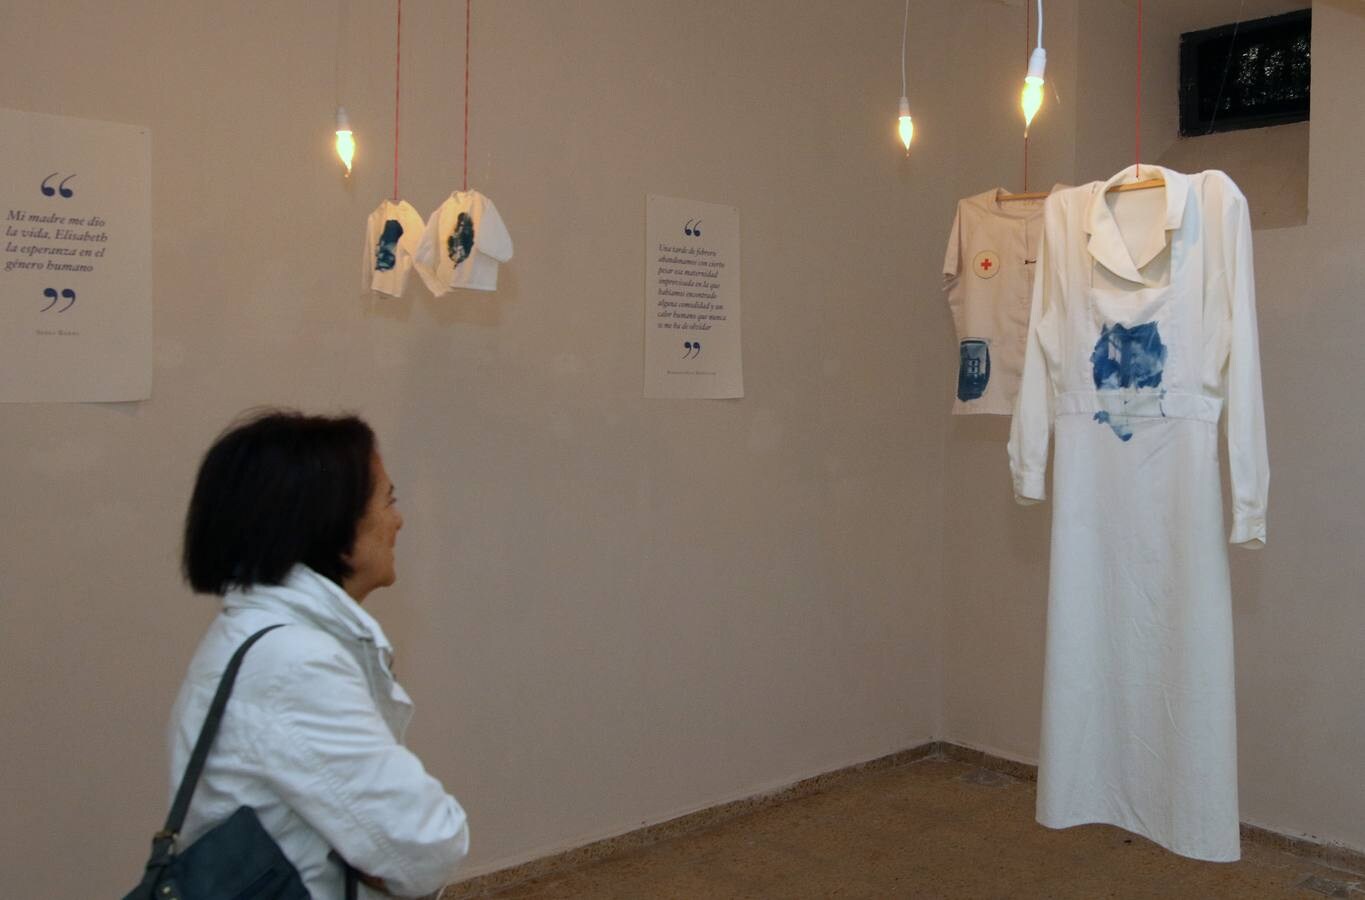 El proyecto Galerías exhibe en La Cárcel Centro de Creación de Segovia los trabajos de veinticinco artistas. Algunas de las intervenciones hacen referencia al 80º aniversario del exilio republicano